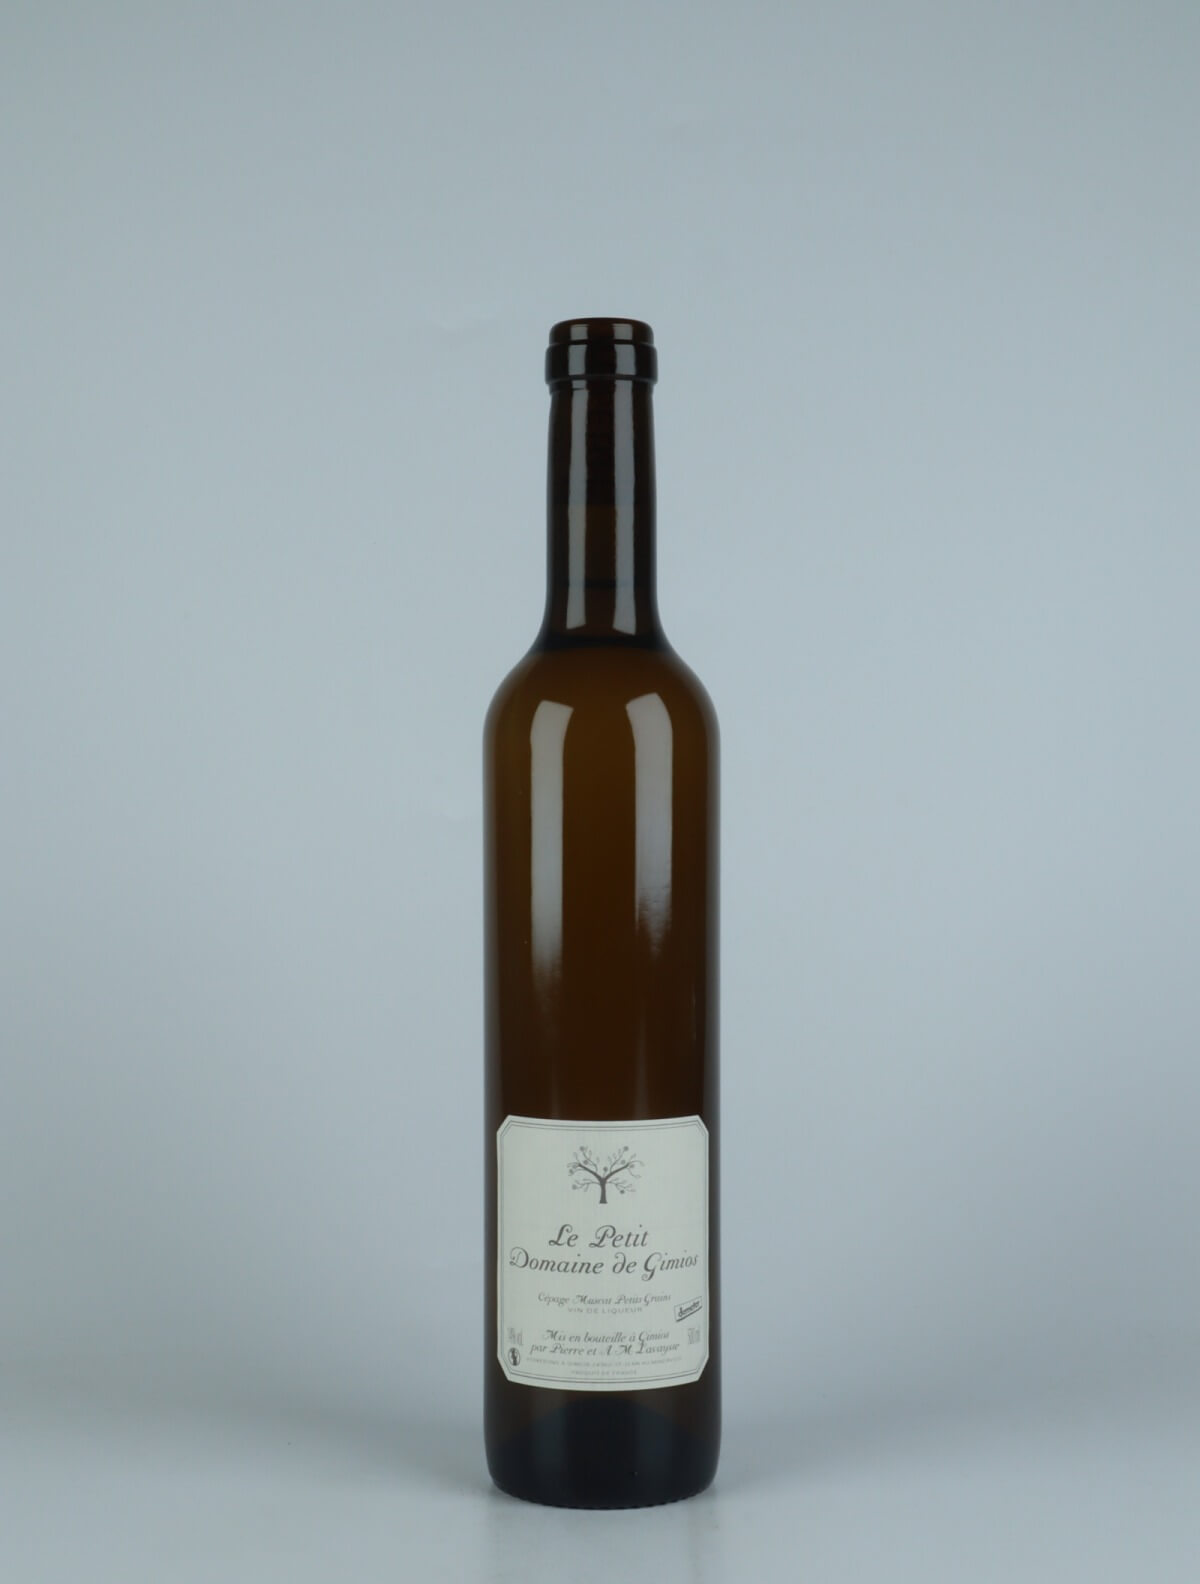 En flaske 2019 Vin Doux Naturel Sød vin fra Le Petit Domaine de Gimios, Rousillon i Frankrig